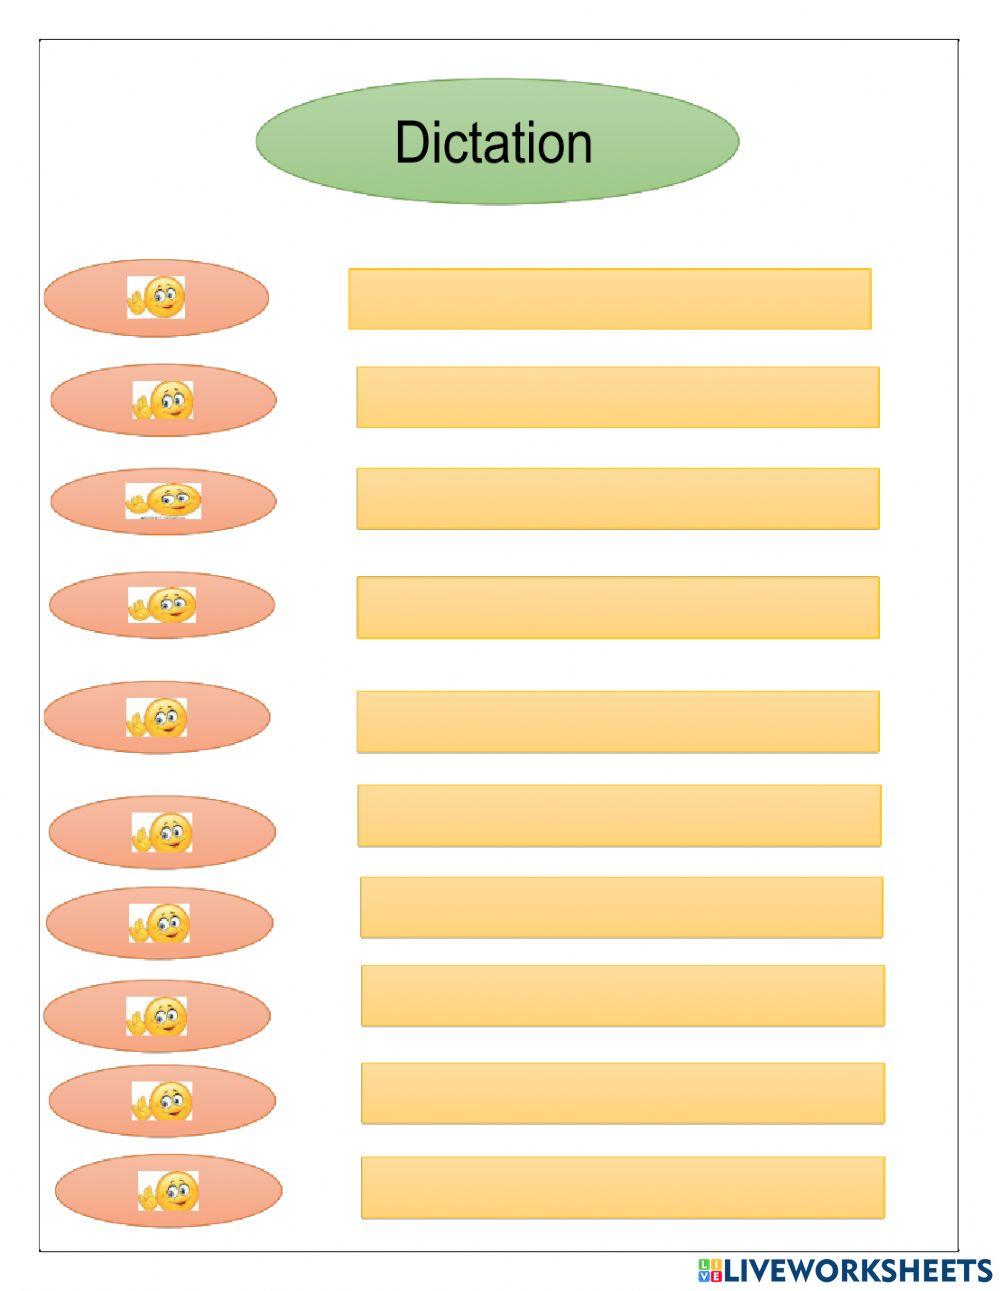 Dictation worksheet